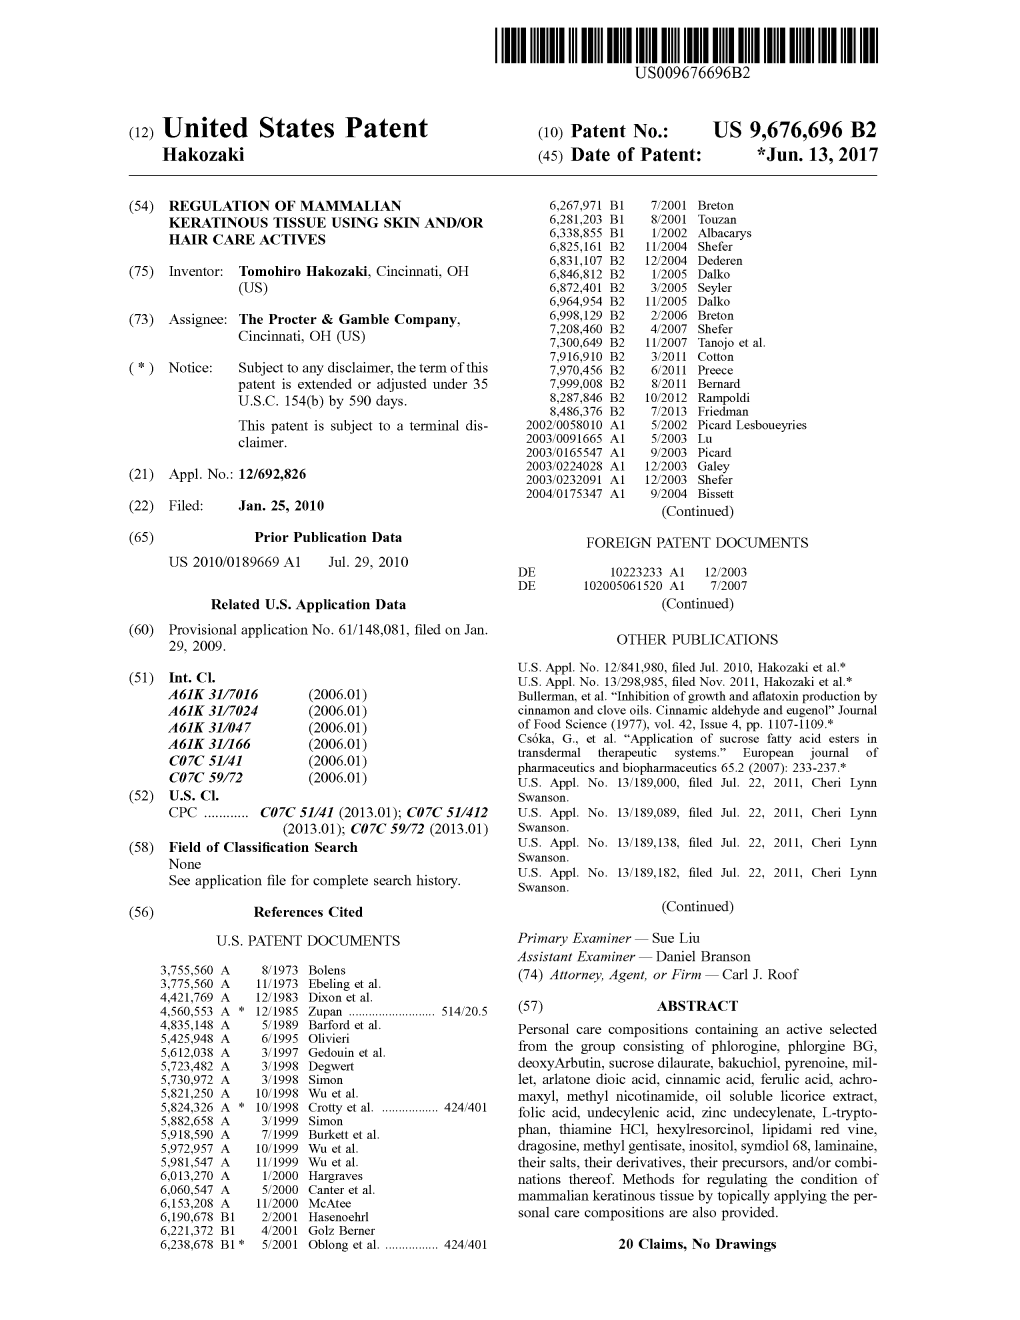 (12) United States Patent (10) Patent No.: US 9,676,696 B2 Hakozaki (45) Date of Patent: *Jun